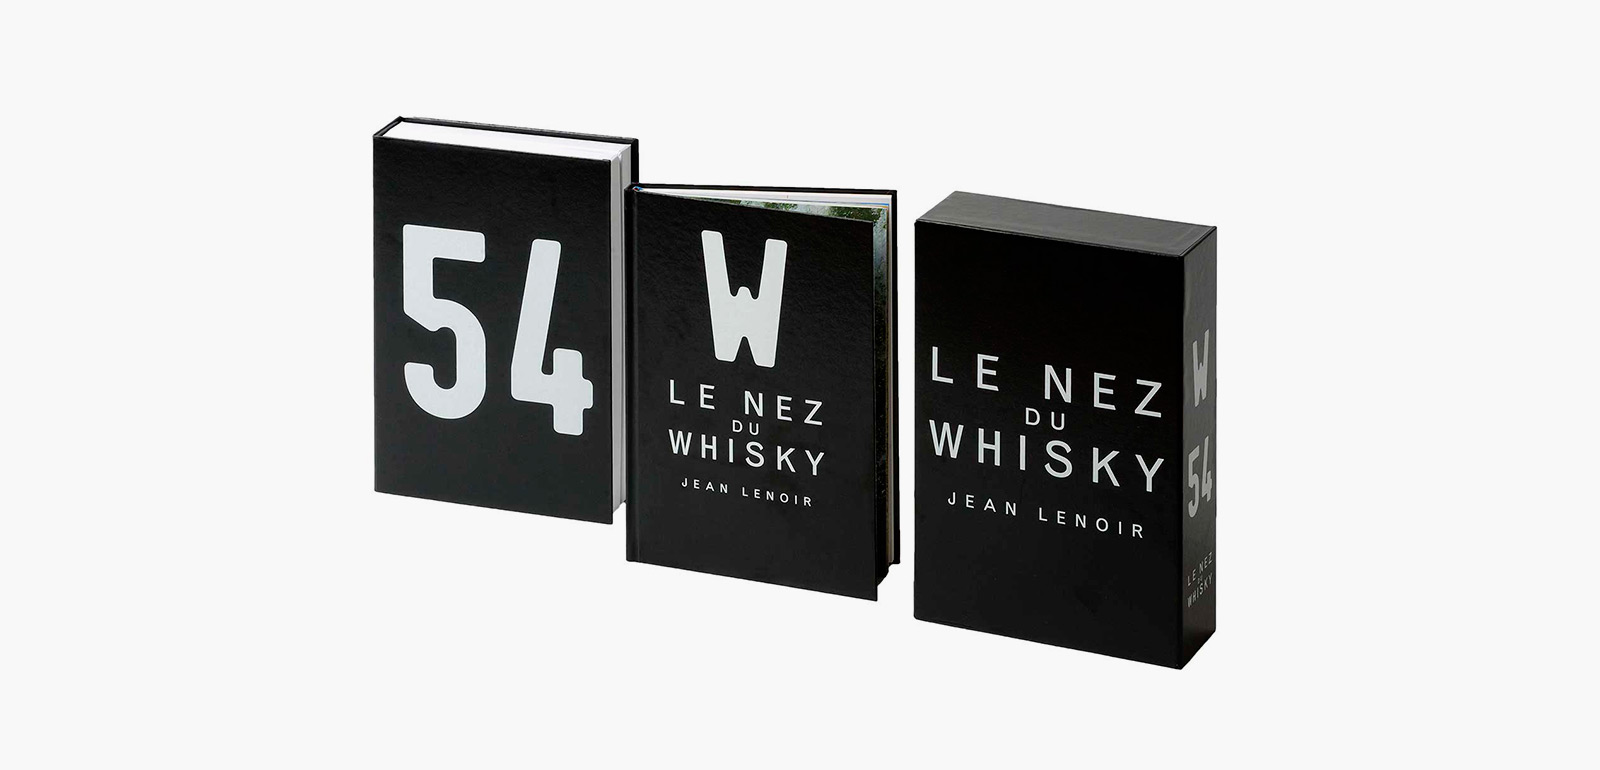 Le Nez du Whisky 54 Aromas